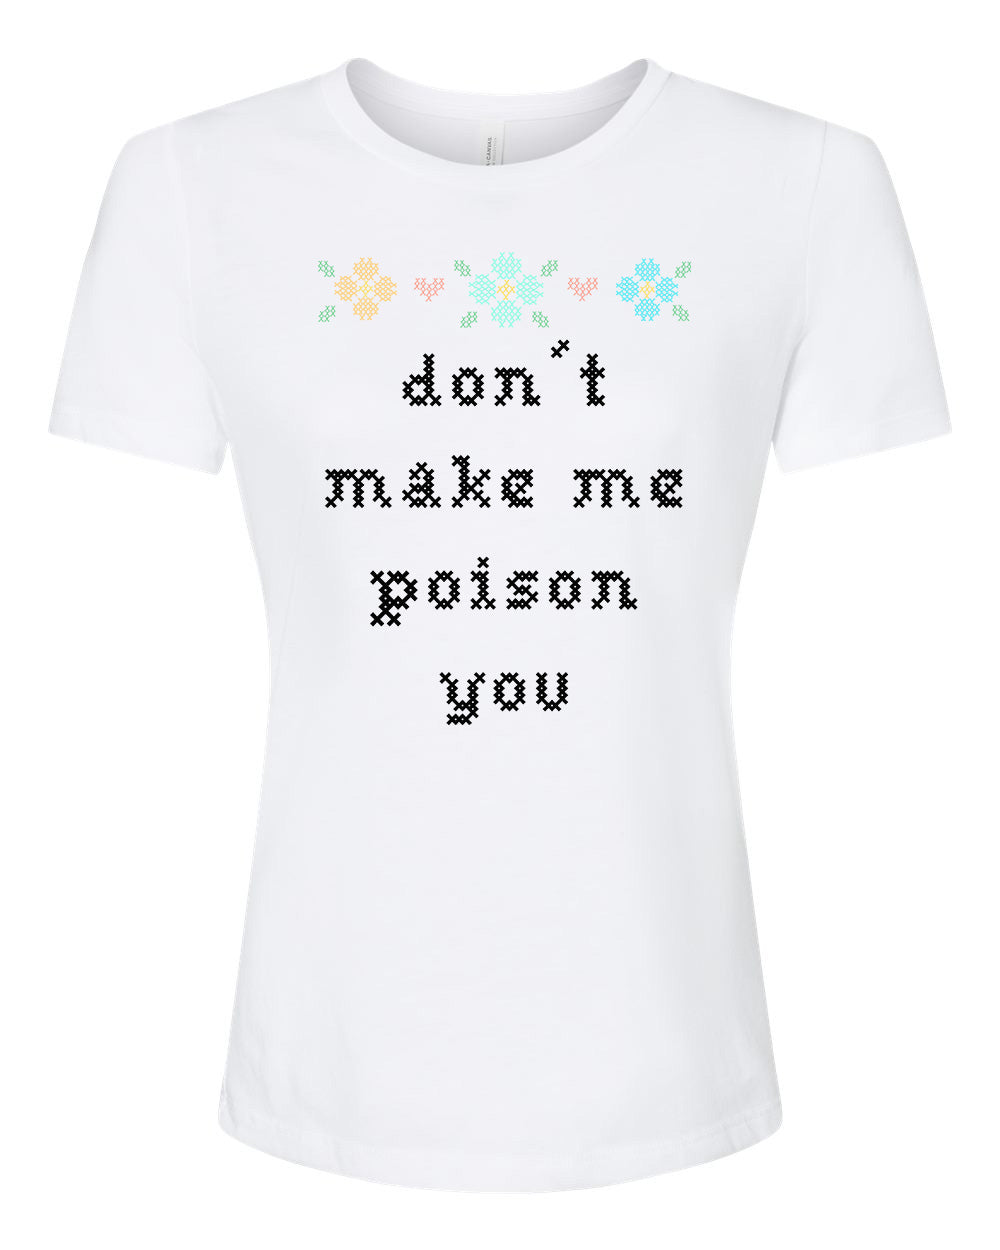 Don't Make Me Poison You - Cross Stitch Design - Women's Crew Tee - White